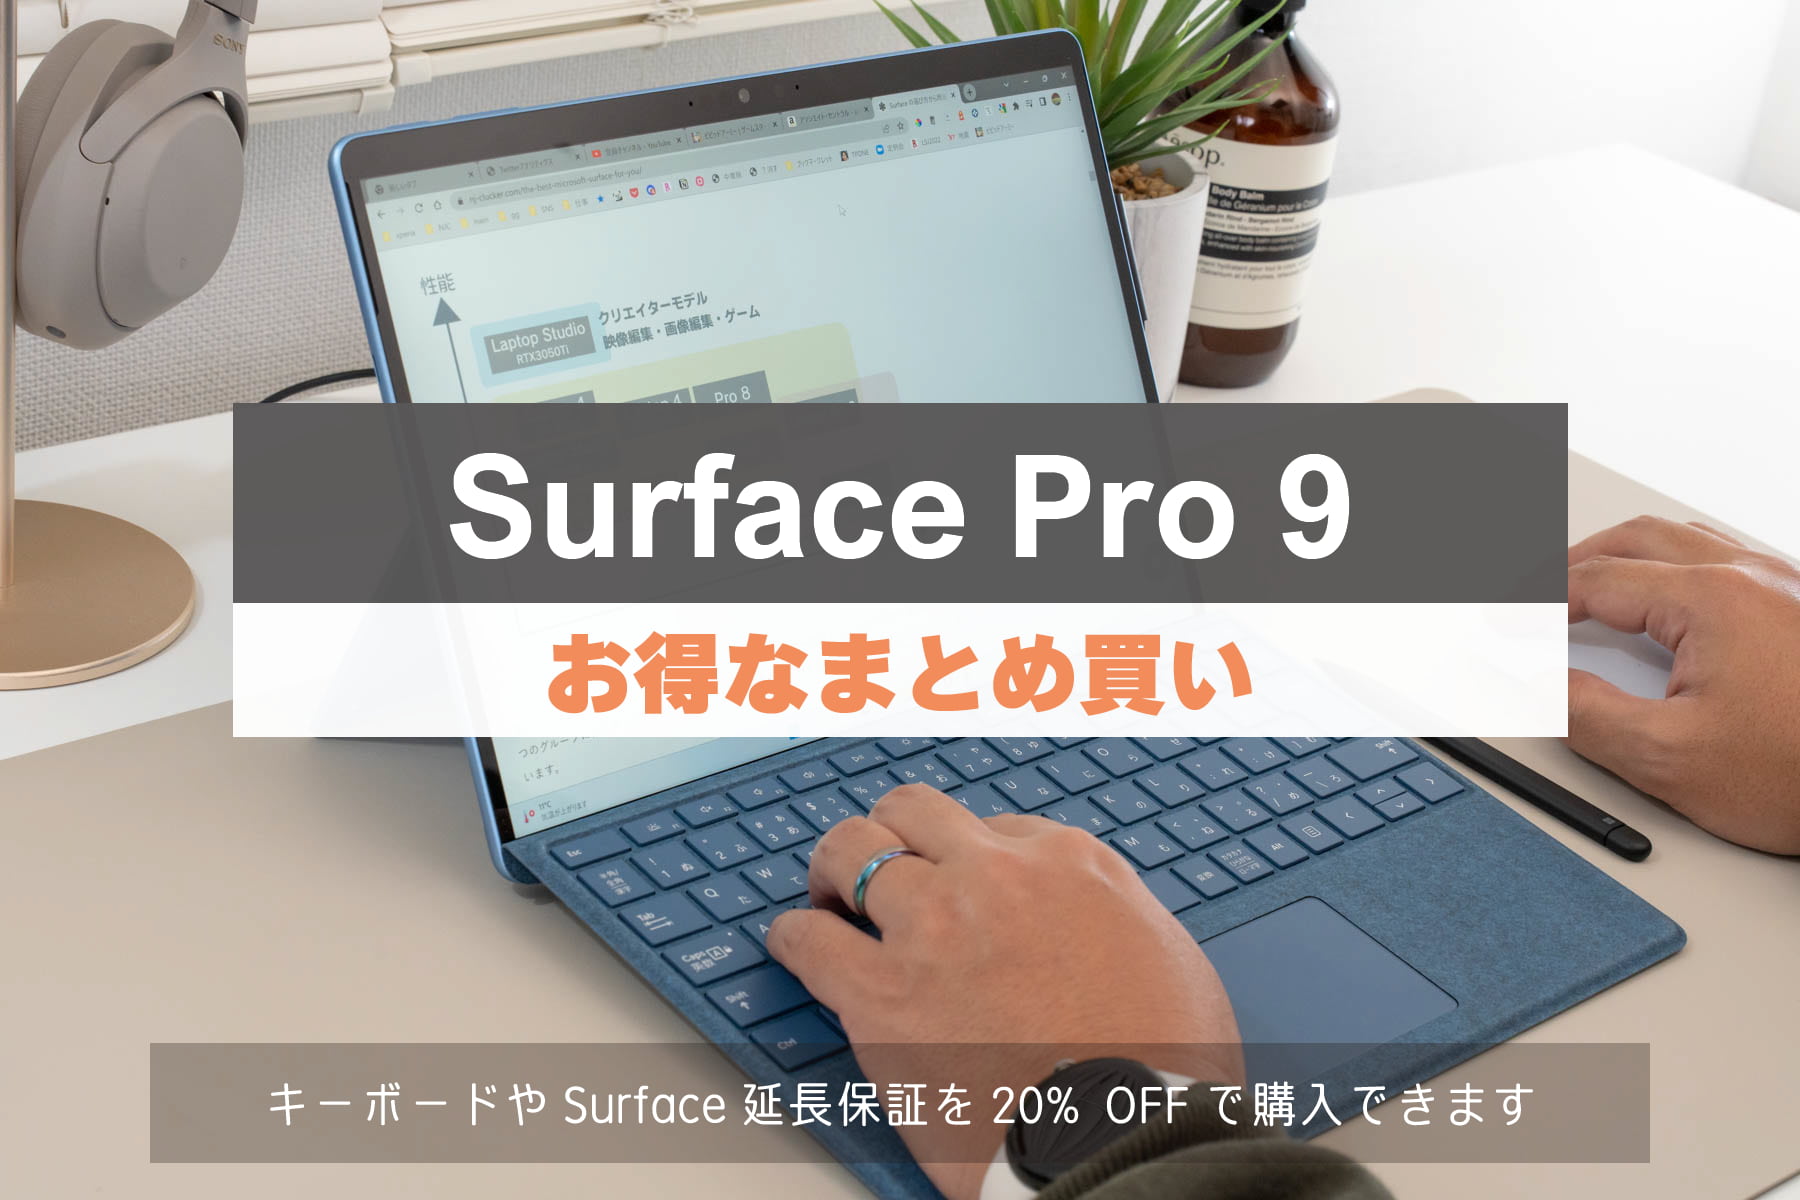 Surface Pro 9 セール情報「お得なまとめ買い」